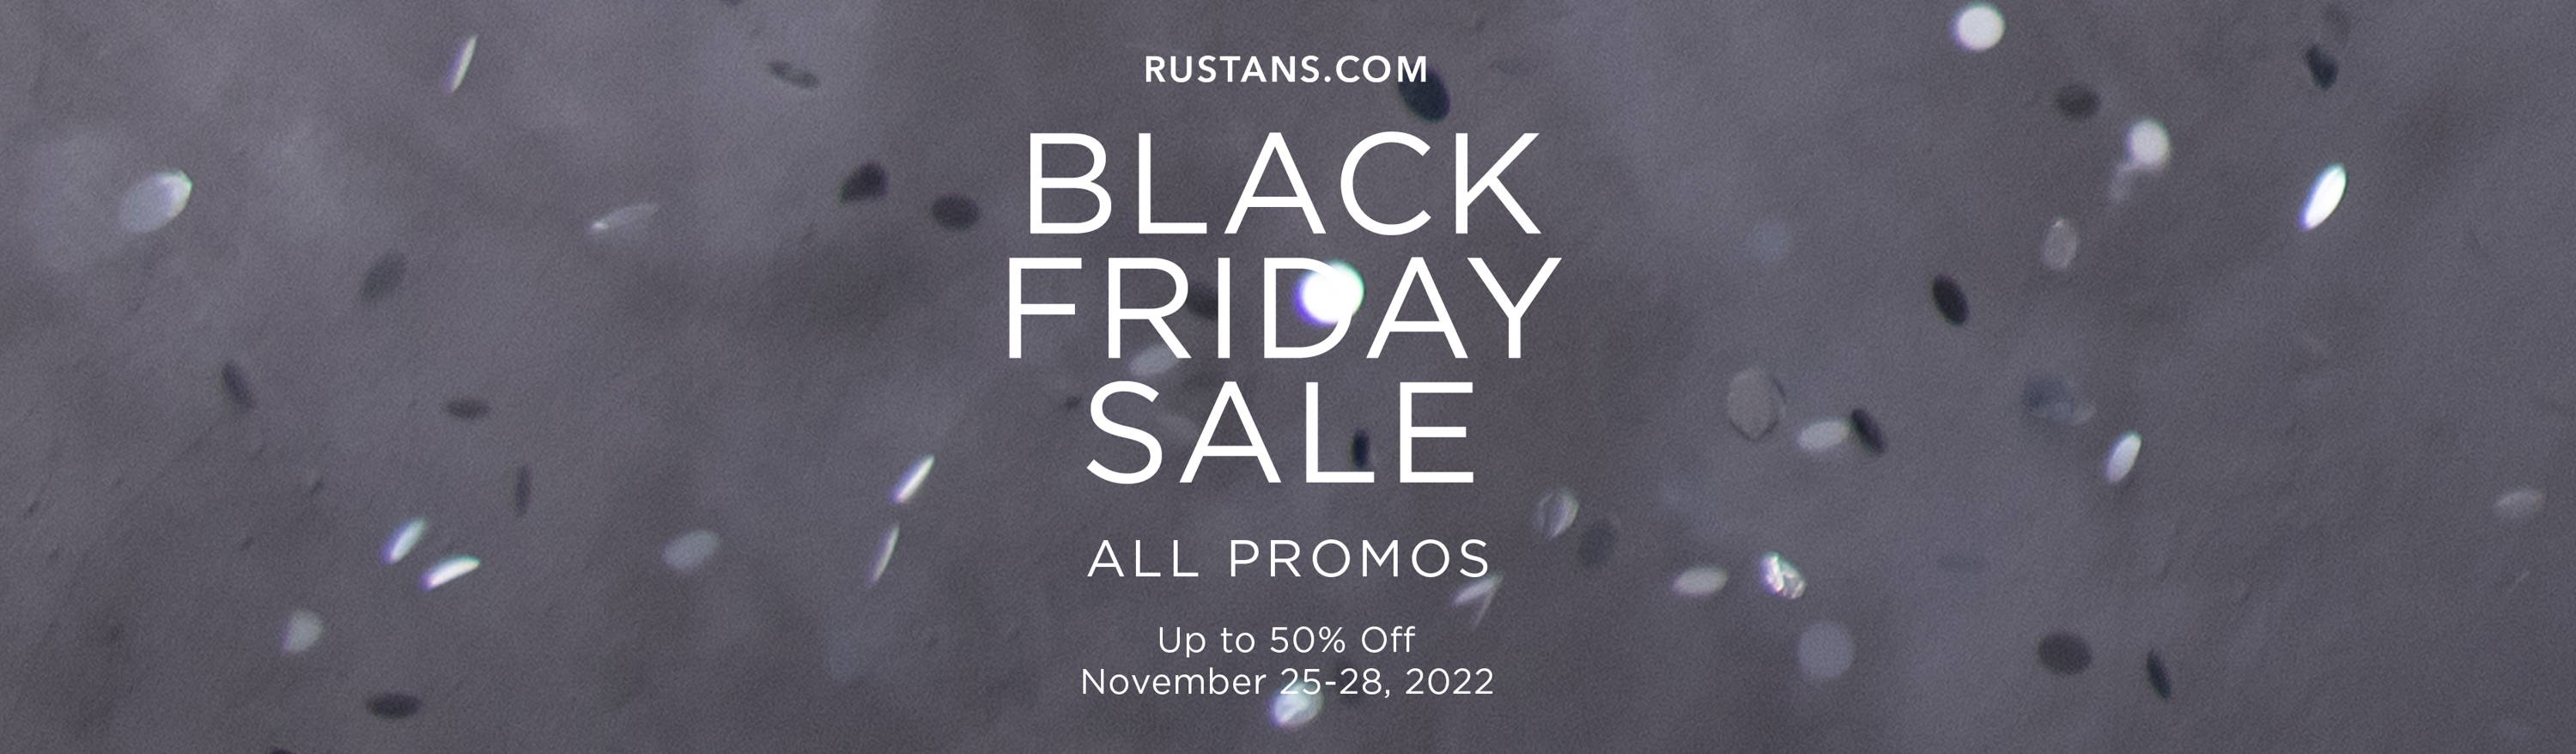 Rustans.com Black Friday Sale: All Promos